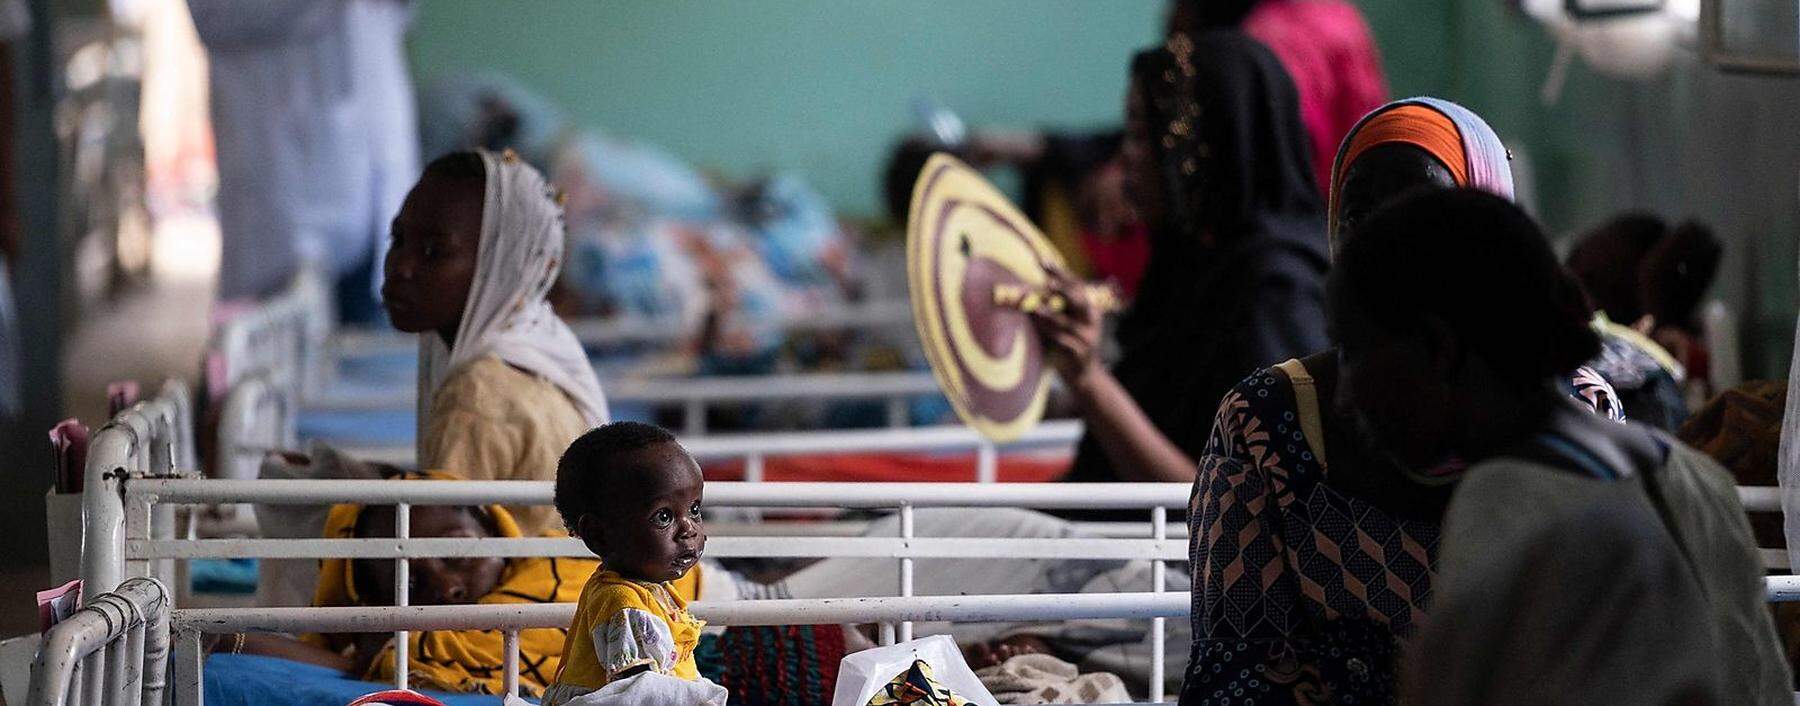 Archivbild: Ein unterernährtes Kind in einer Klinik im Tschad.